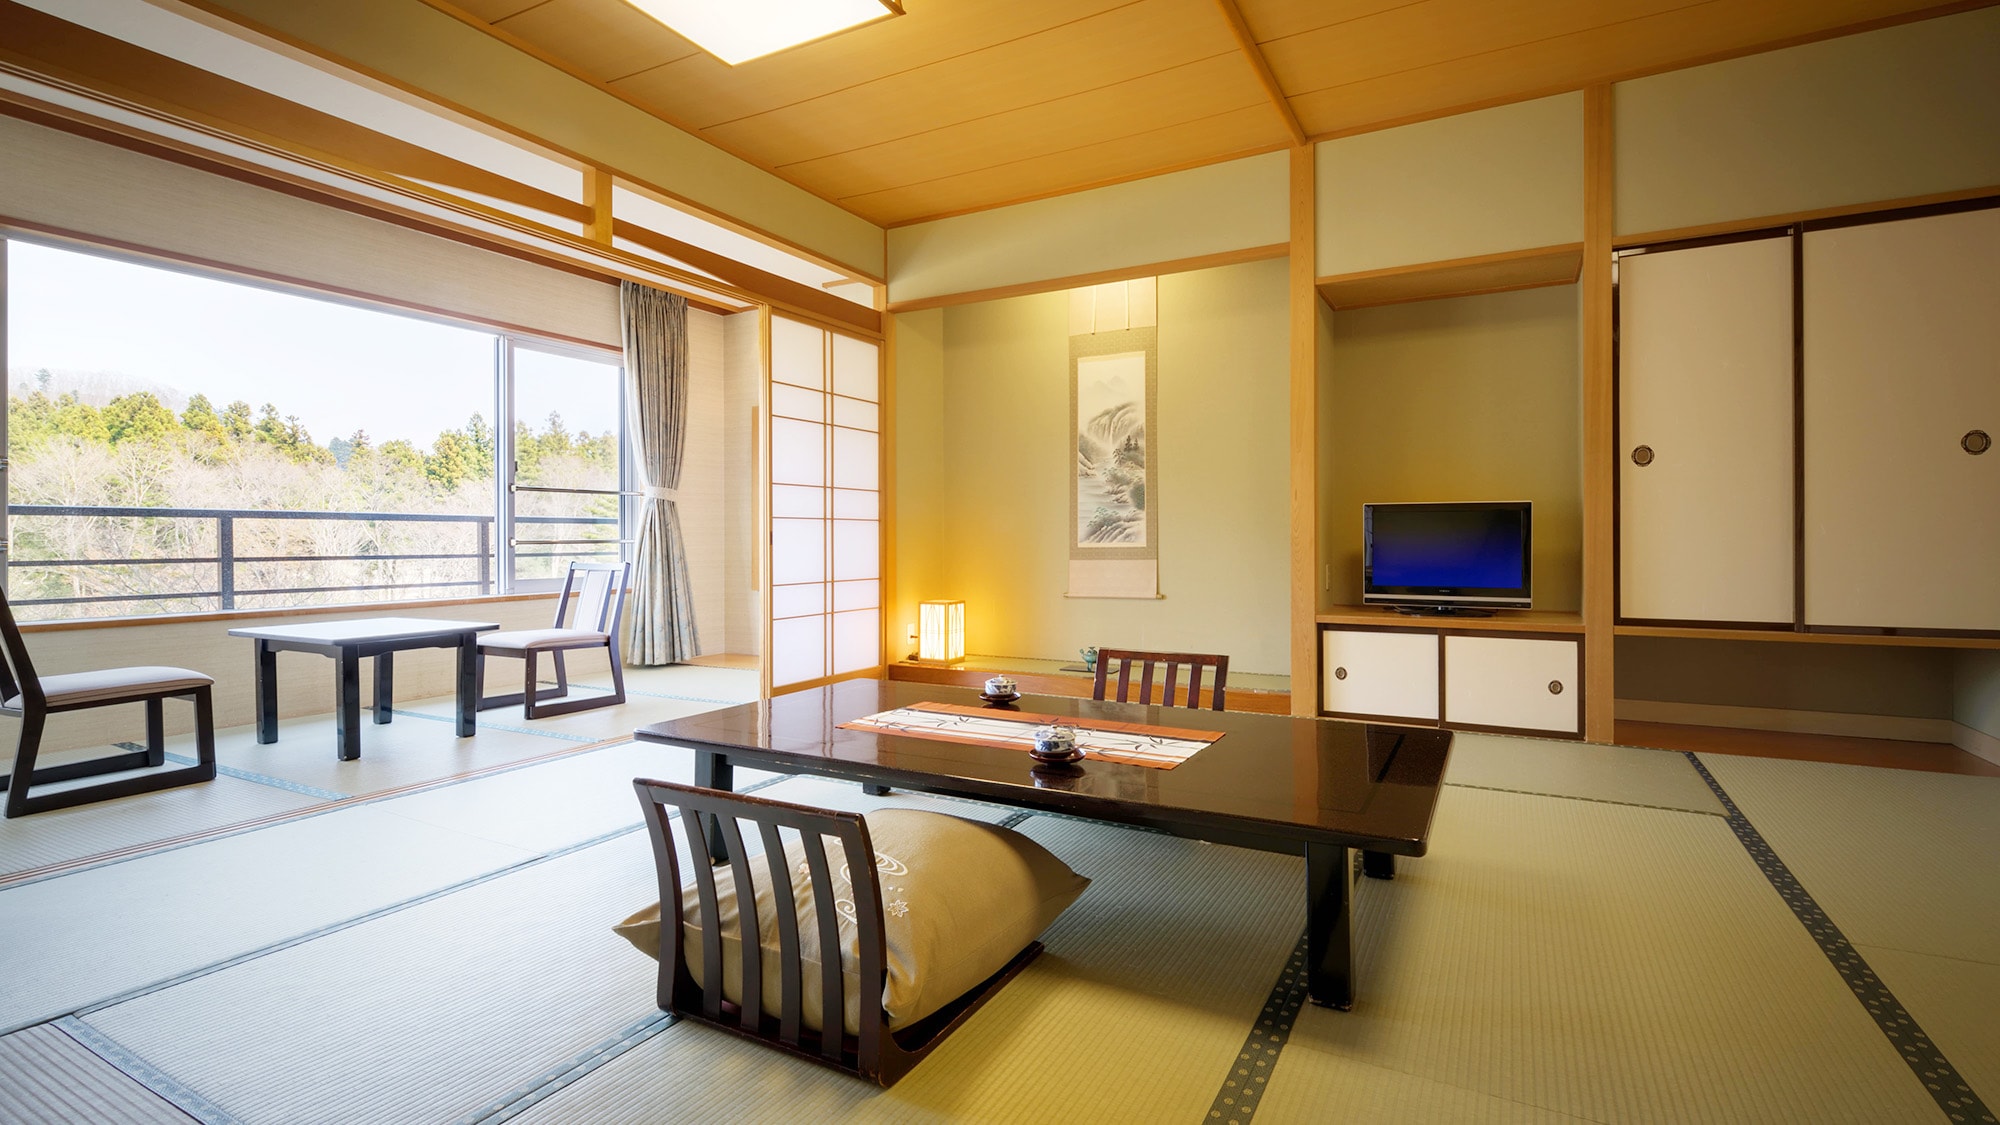 ตัวอย่างห้องพักสไตล์ญี่ปุ่น [ปลอดบุหรี่]... ท่านสามารถพักผ่อนกับครอบครัว ห้องพักทุกห้องเป็นห้องปลอดบุหรี่